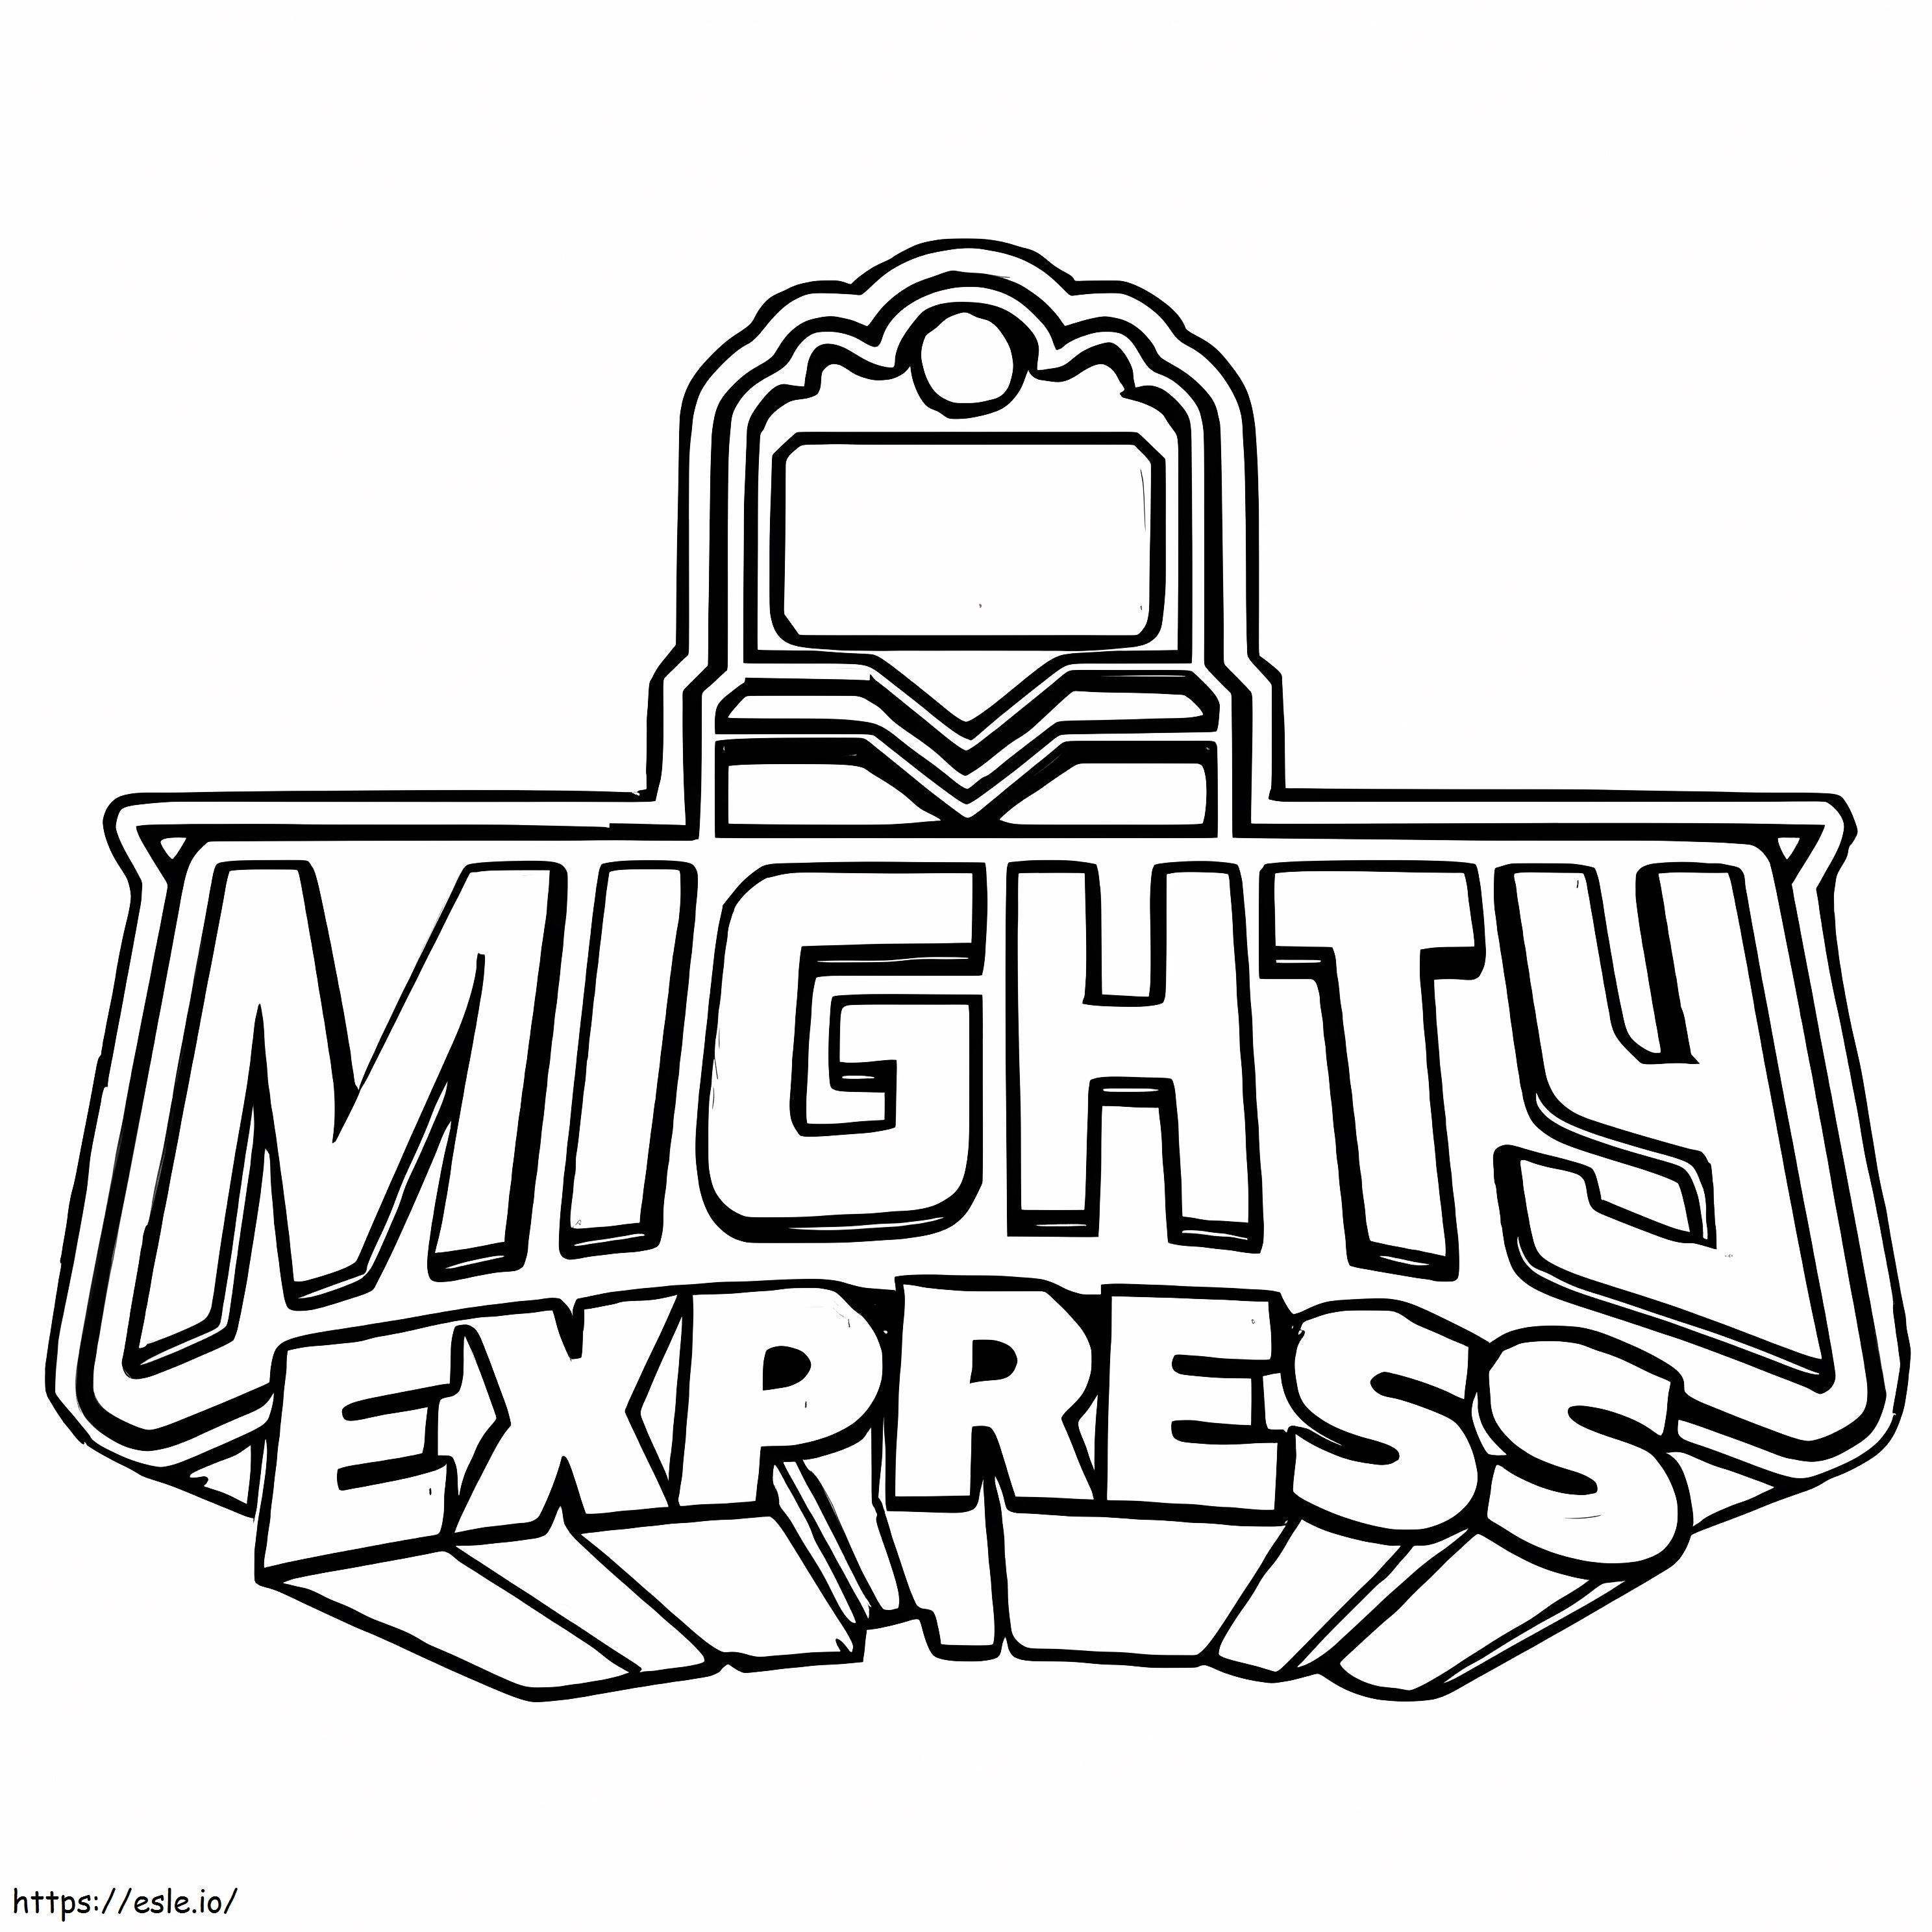 Mighty Express-logo kleurplaat kleurplaat